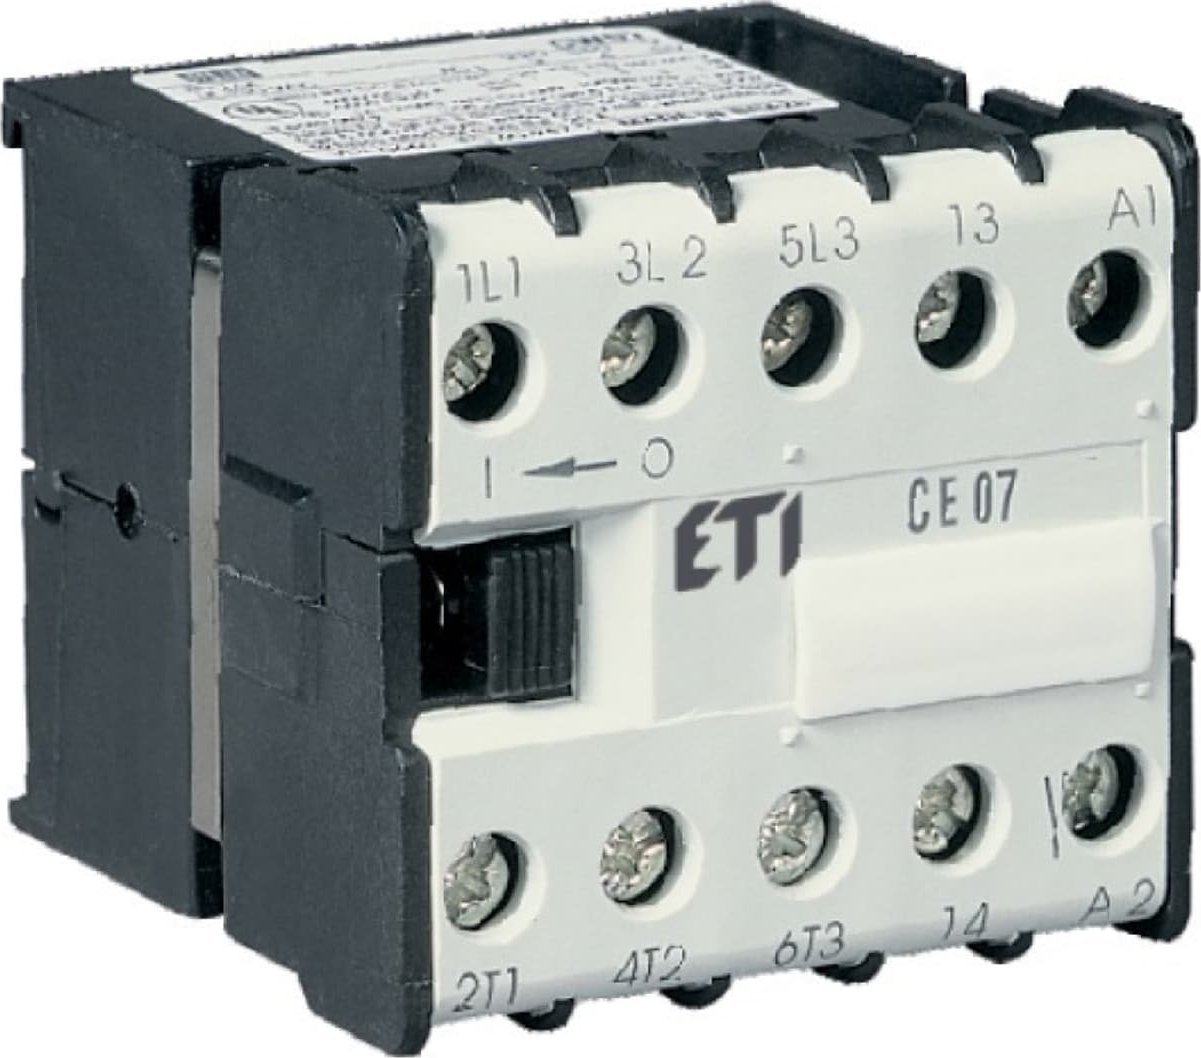 Contactor miniatural Eti-Polam 7A 3P 400V AC 1NO 0R CE07.10-400V-50/60Hz 004641024